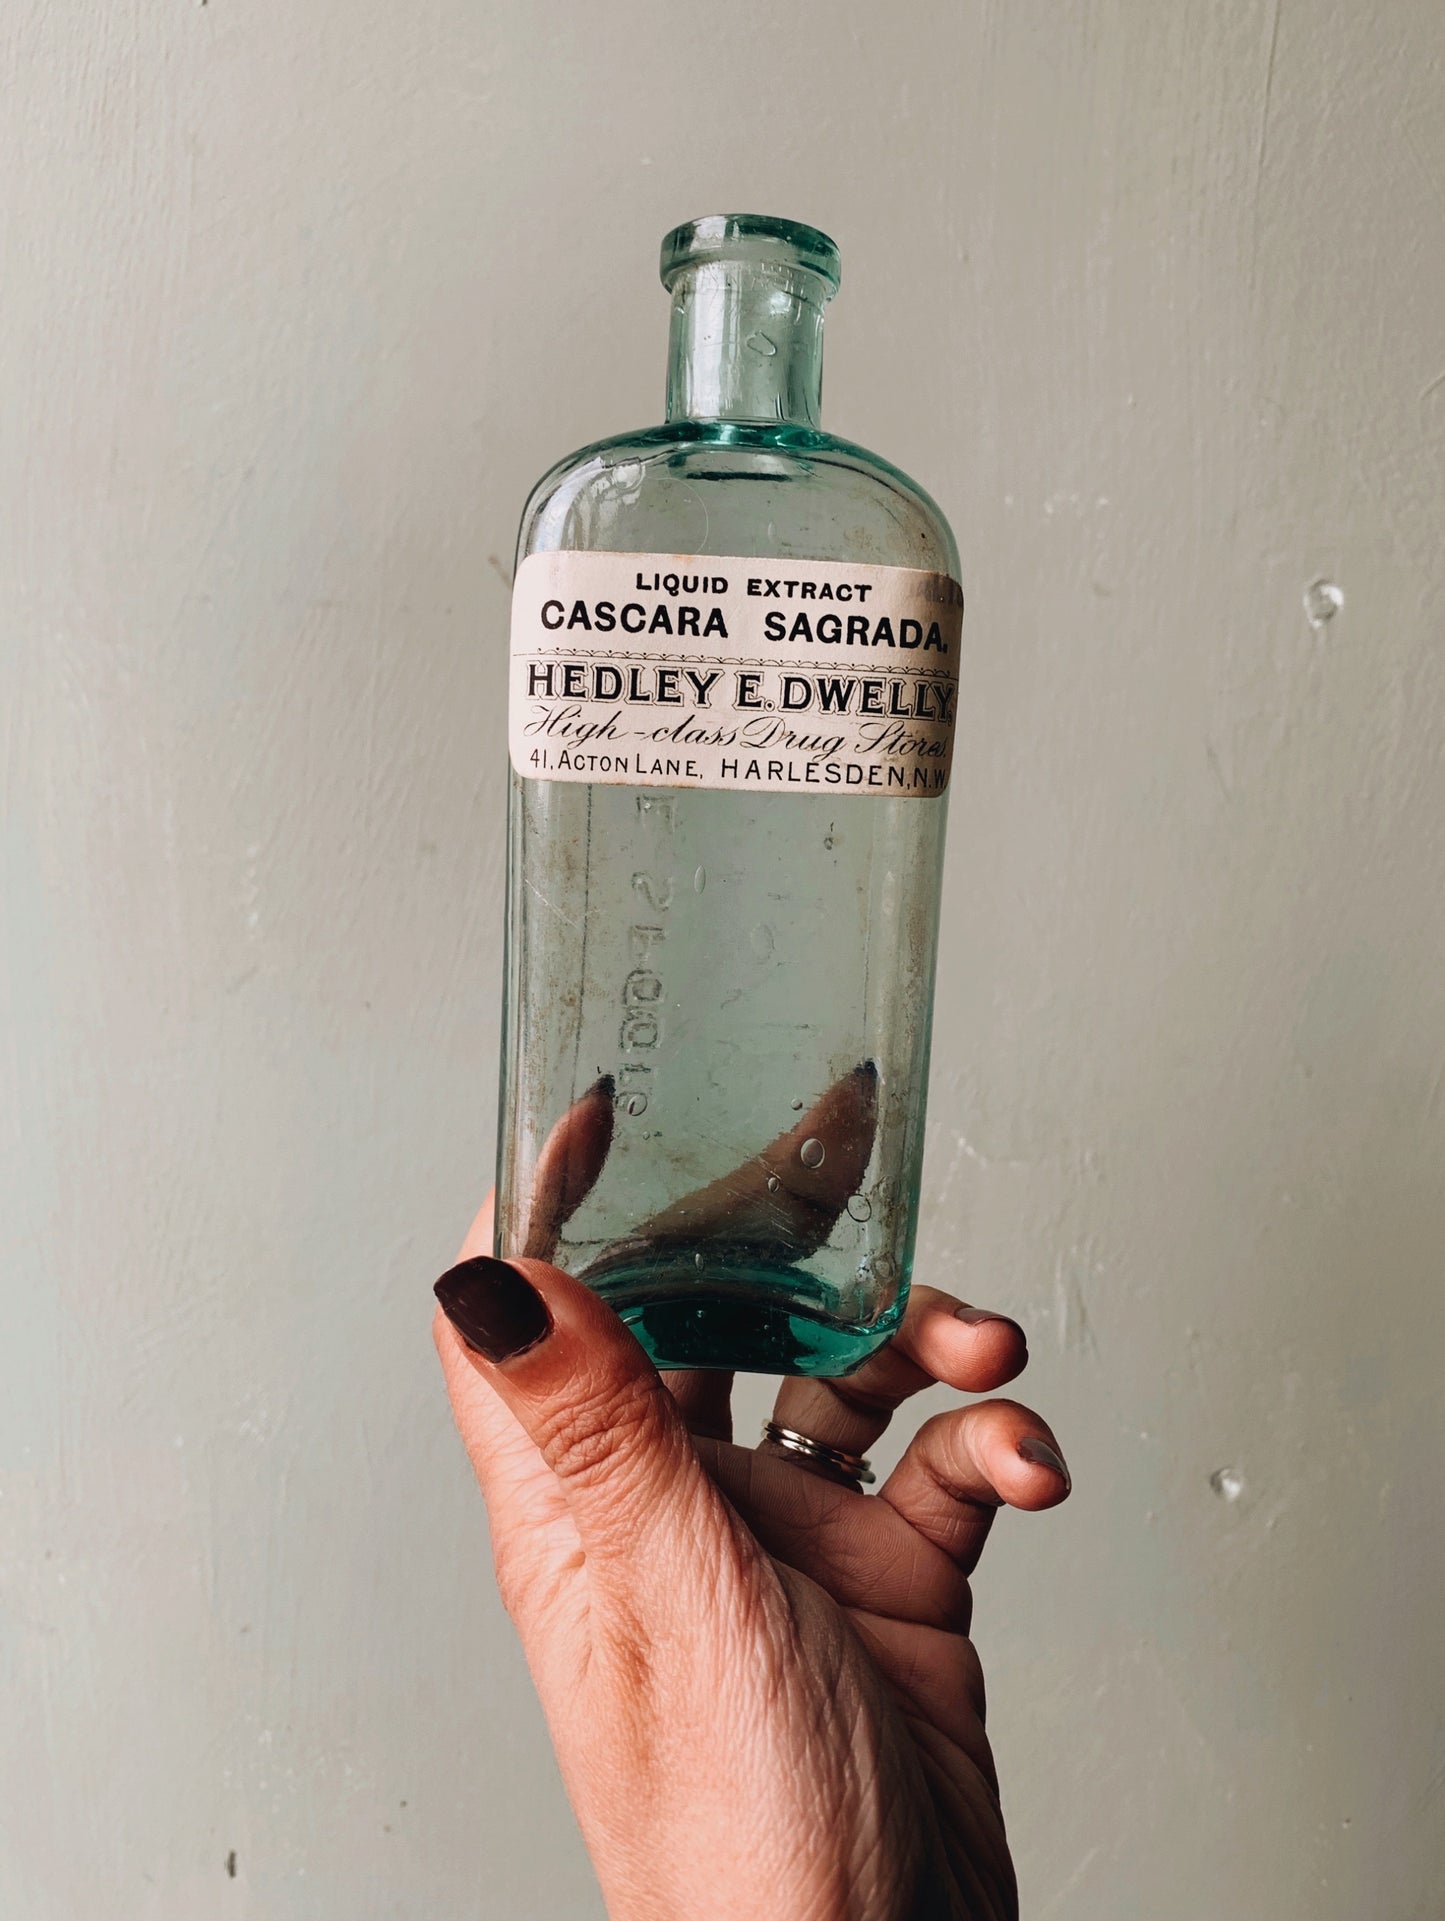 Antique Apothecary Bottle ~ cascara sagrada